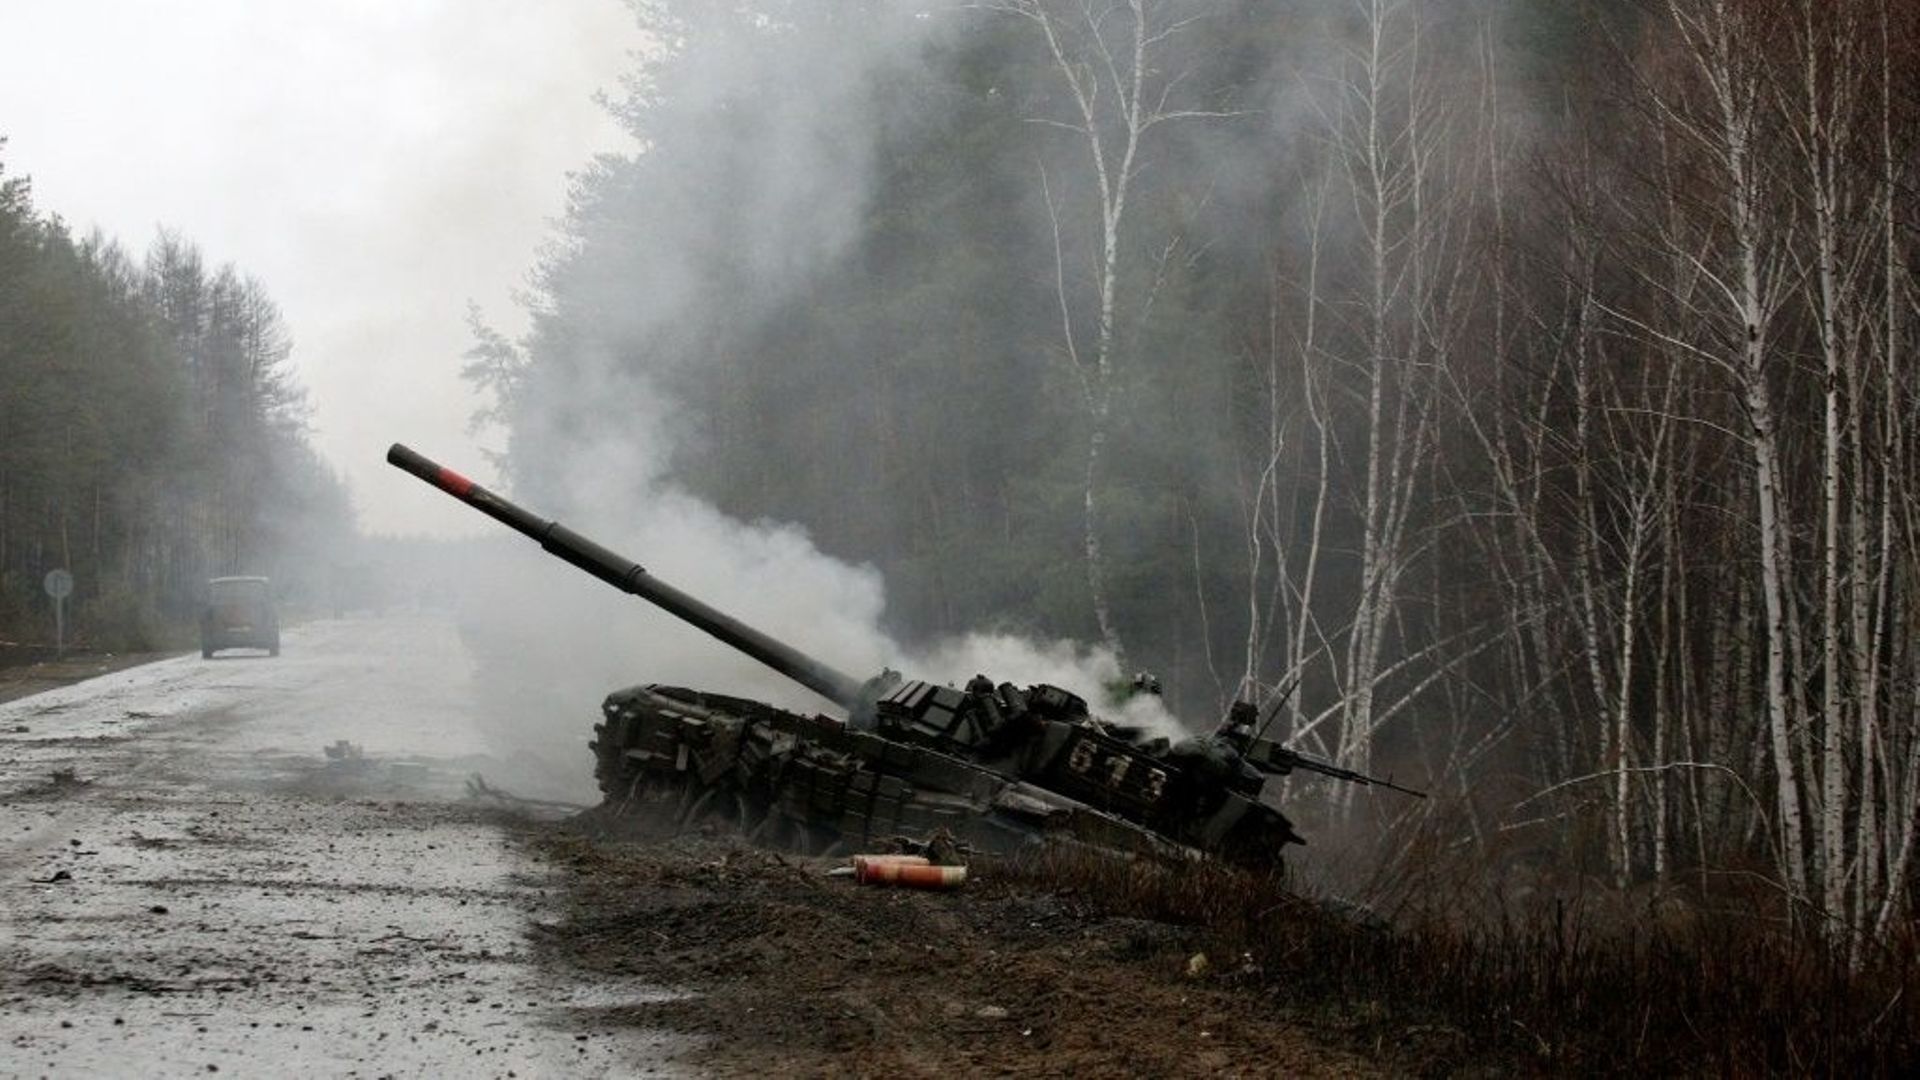 De la fumée s’échappe d’un char russe détruit par les forces ukrainiennes, au bord d’une route dans la région de Lougansk, le 26 février 2022